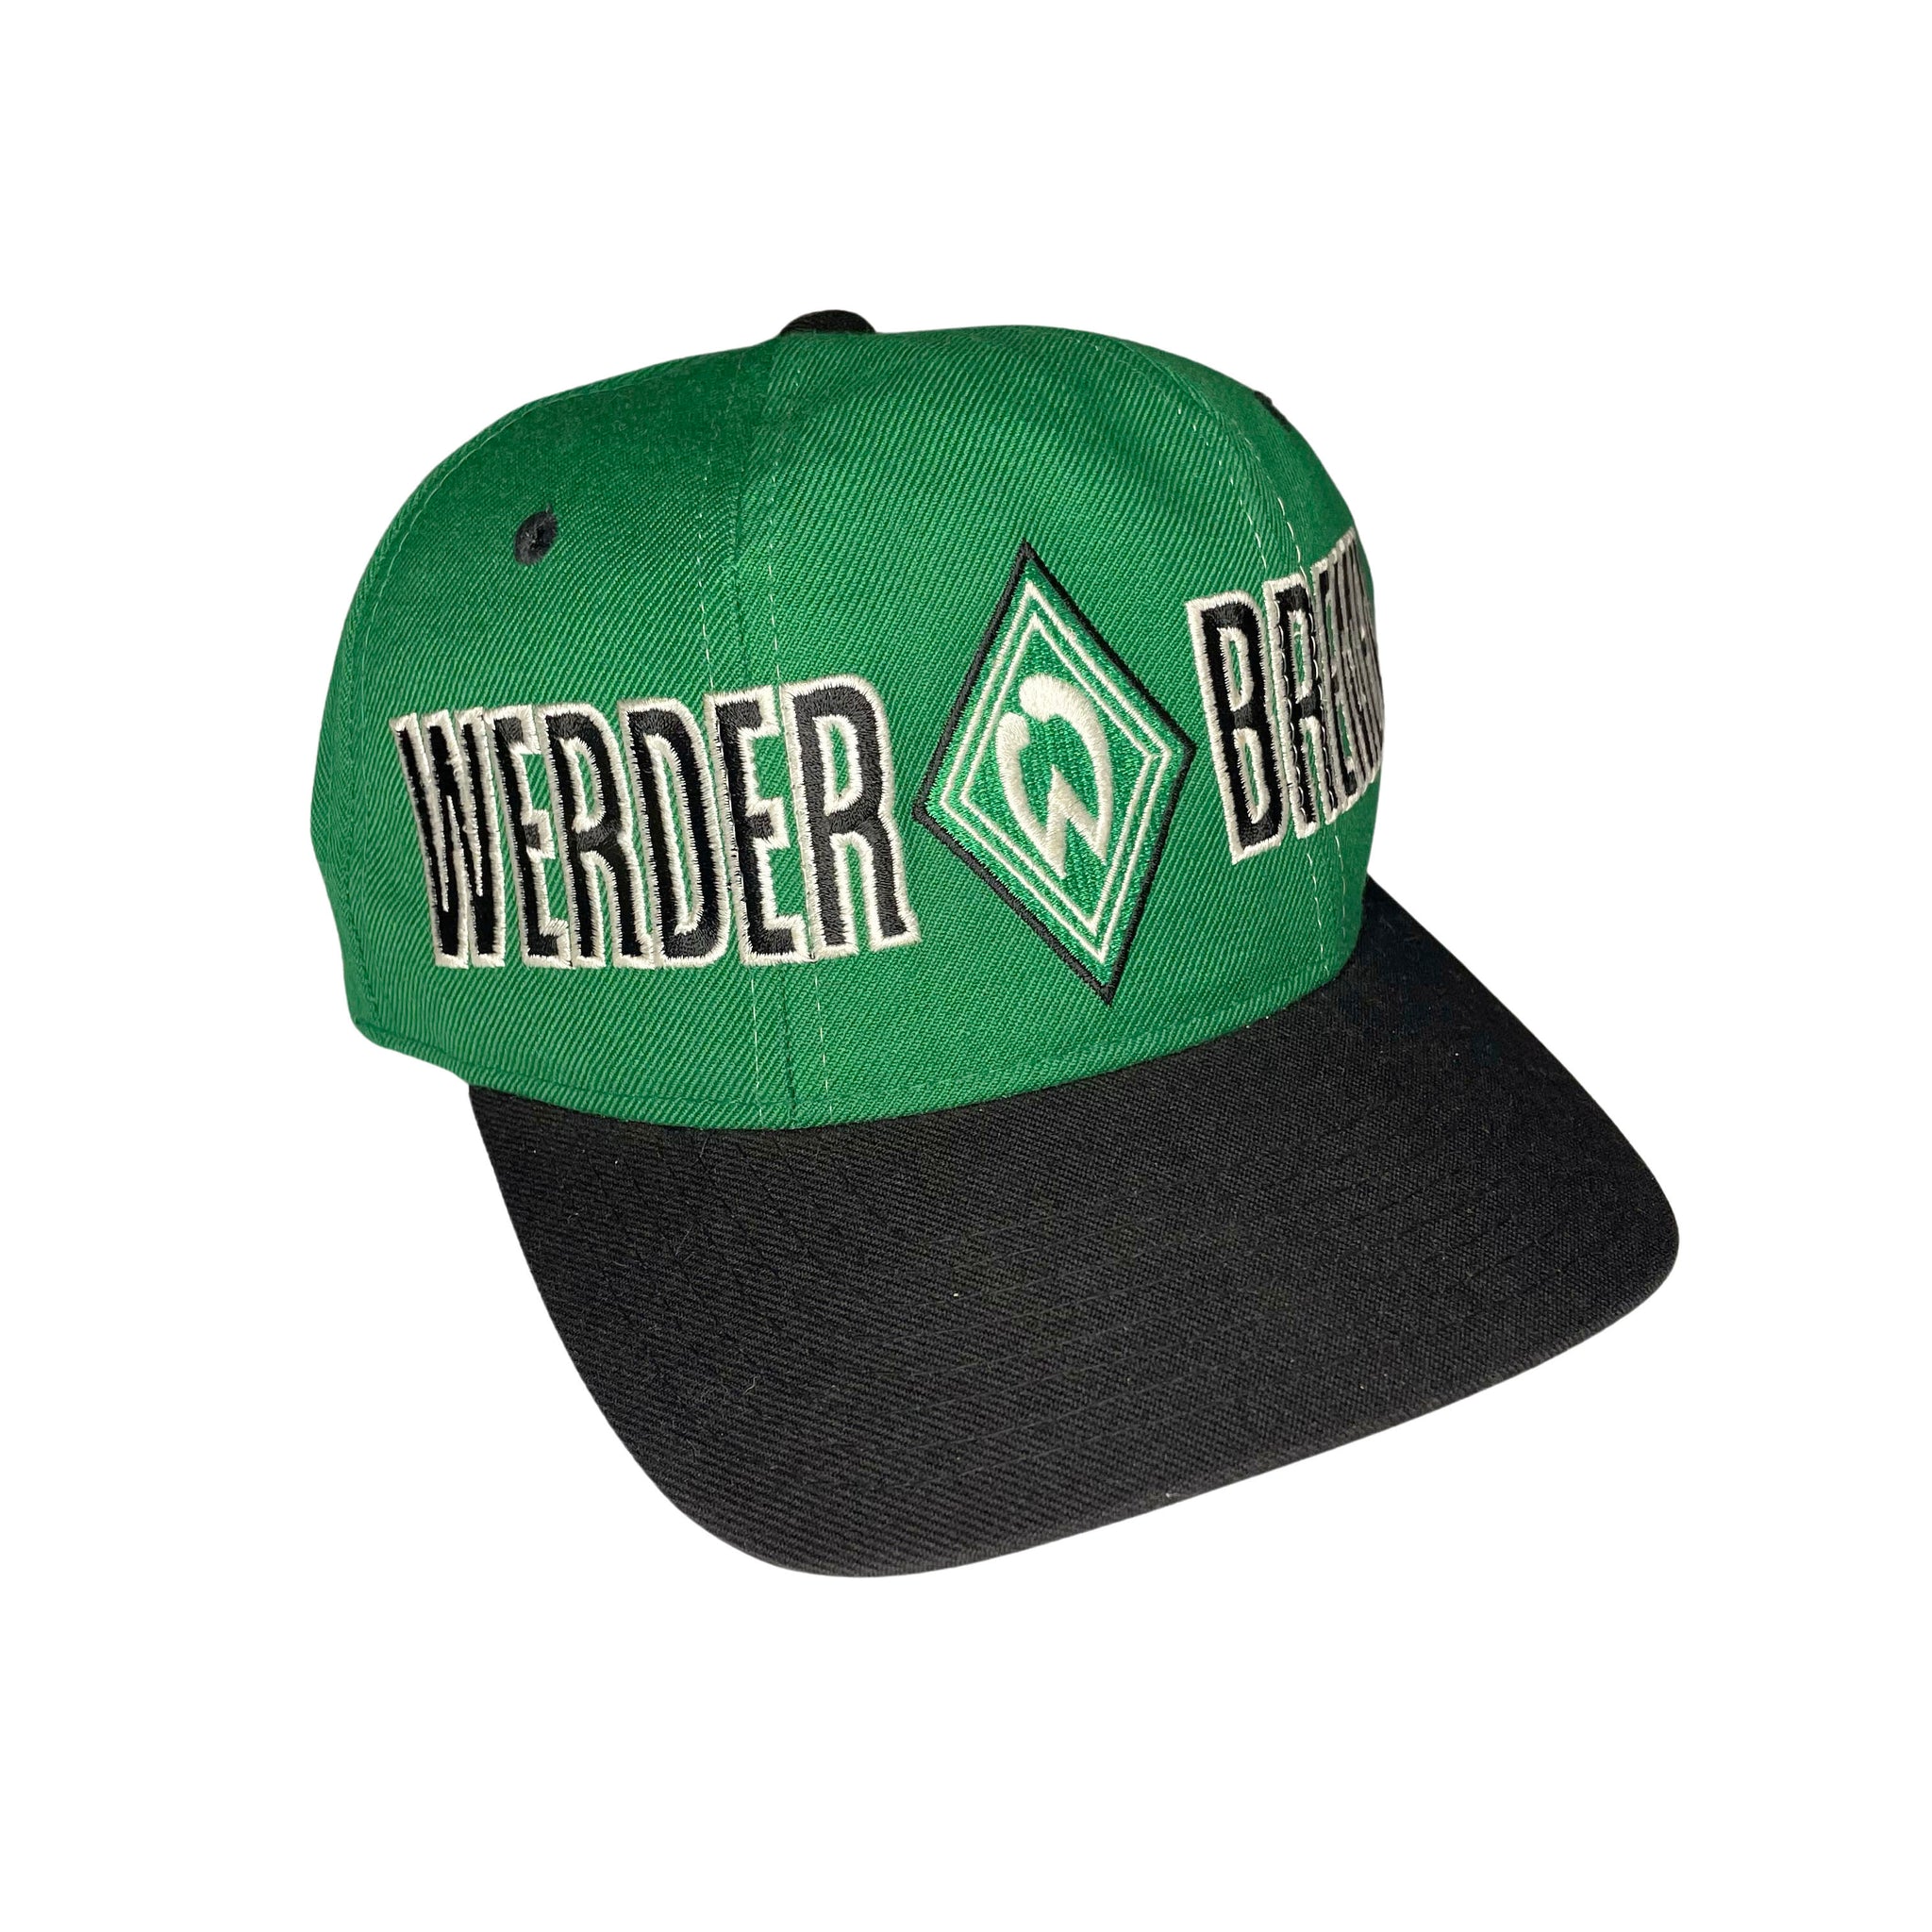 Starter Werder Bremen Snapback Hat